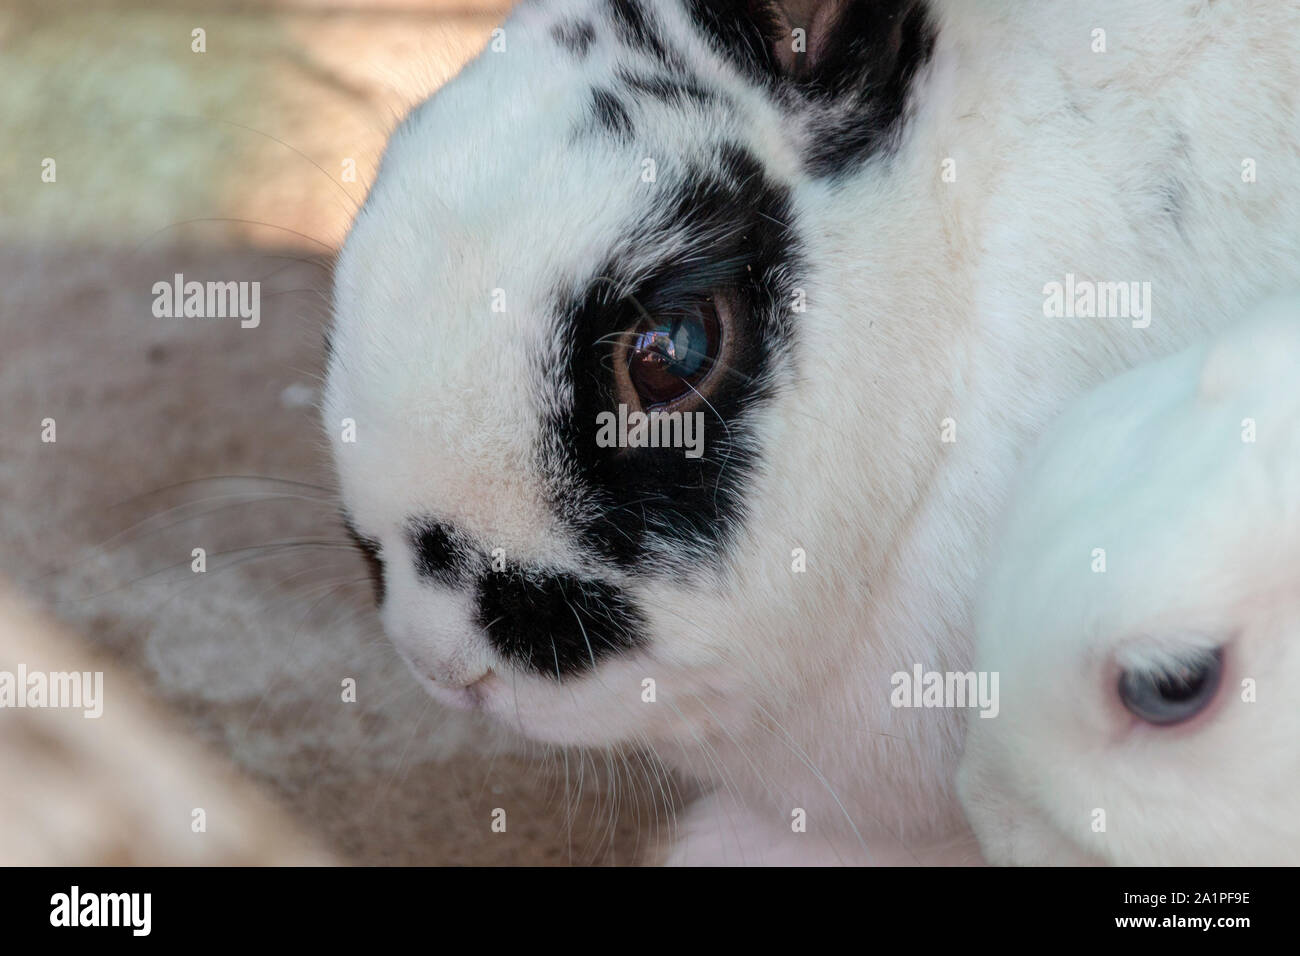 Une vue en gros plan d'un lapin blanc avec des marques noires sur son visage et les oreilles Banque D'Images